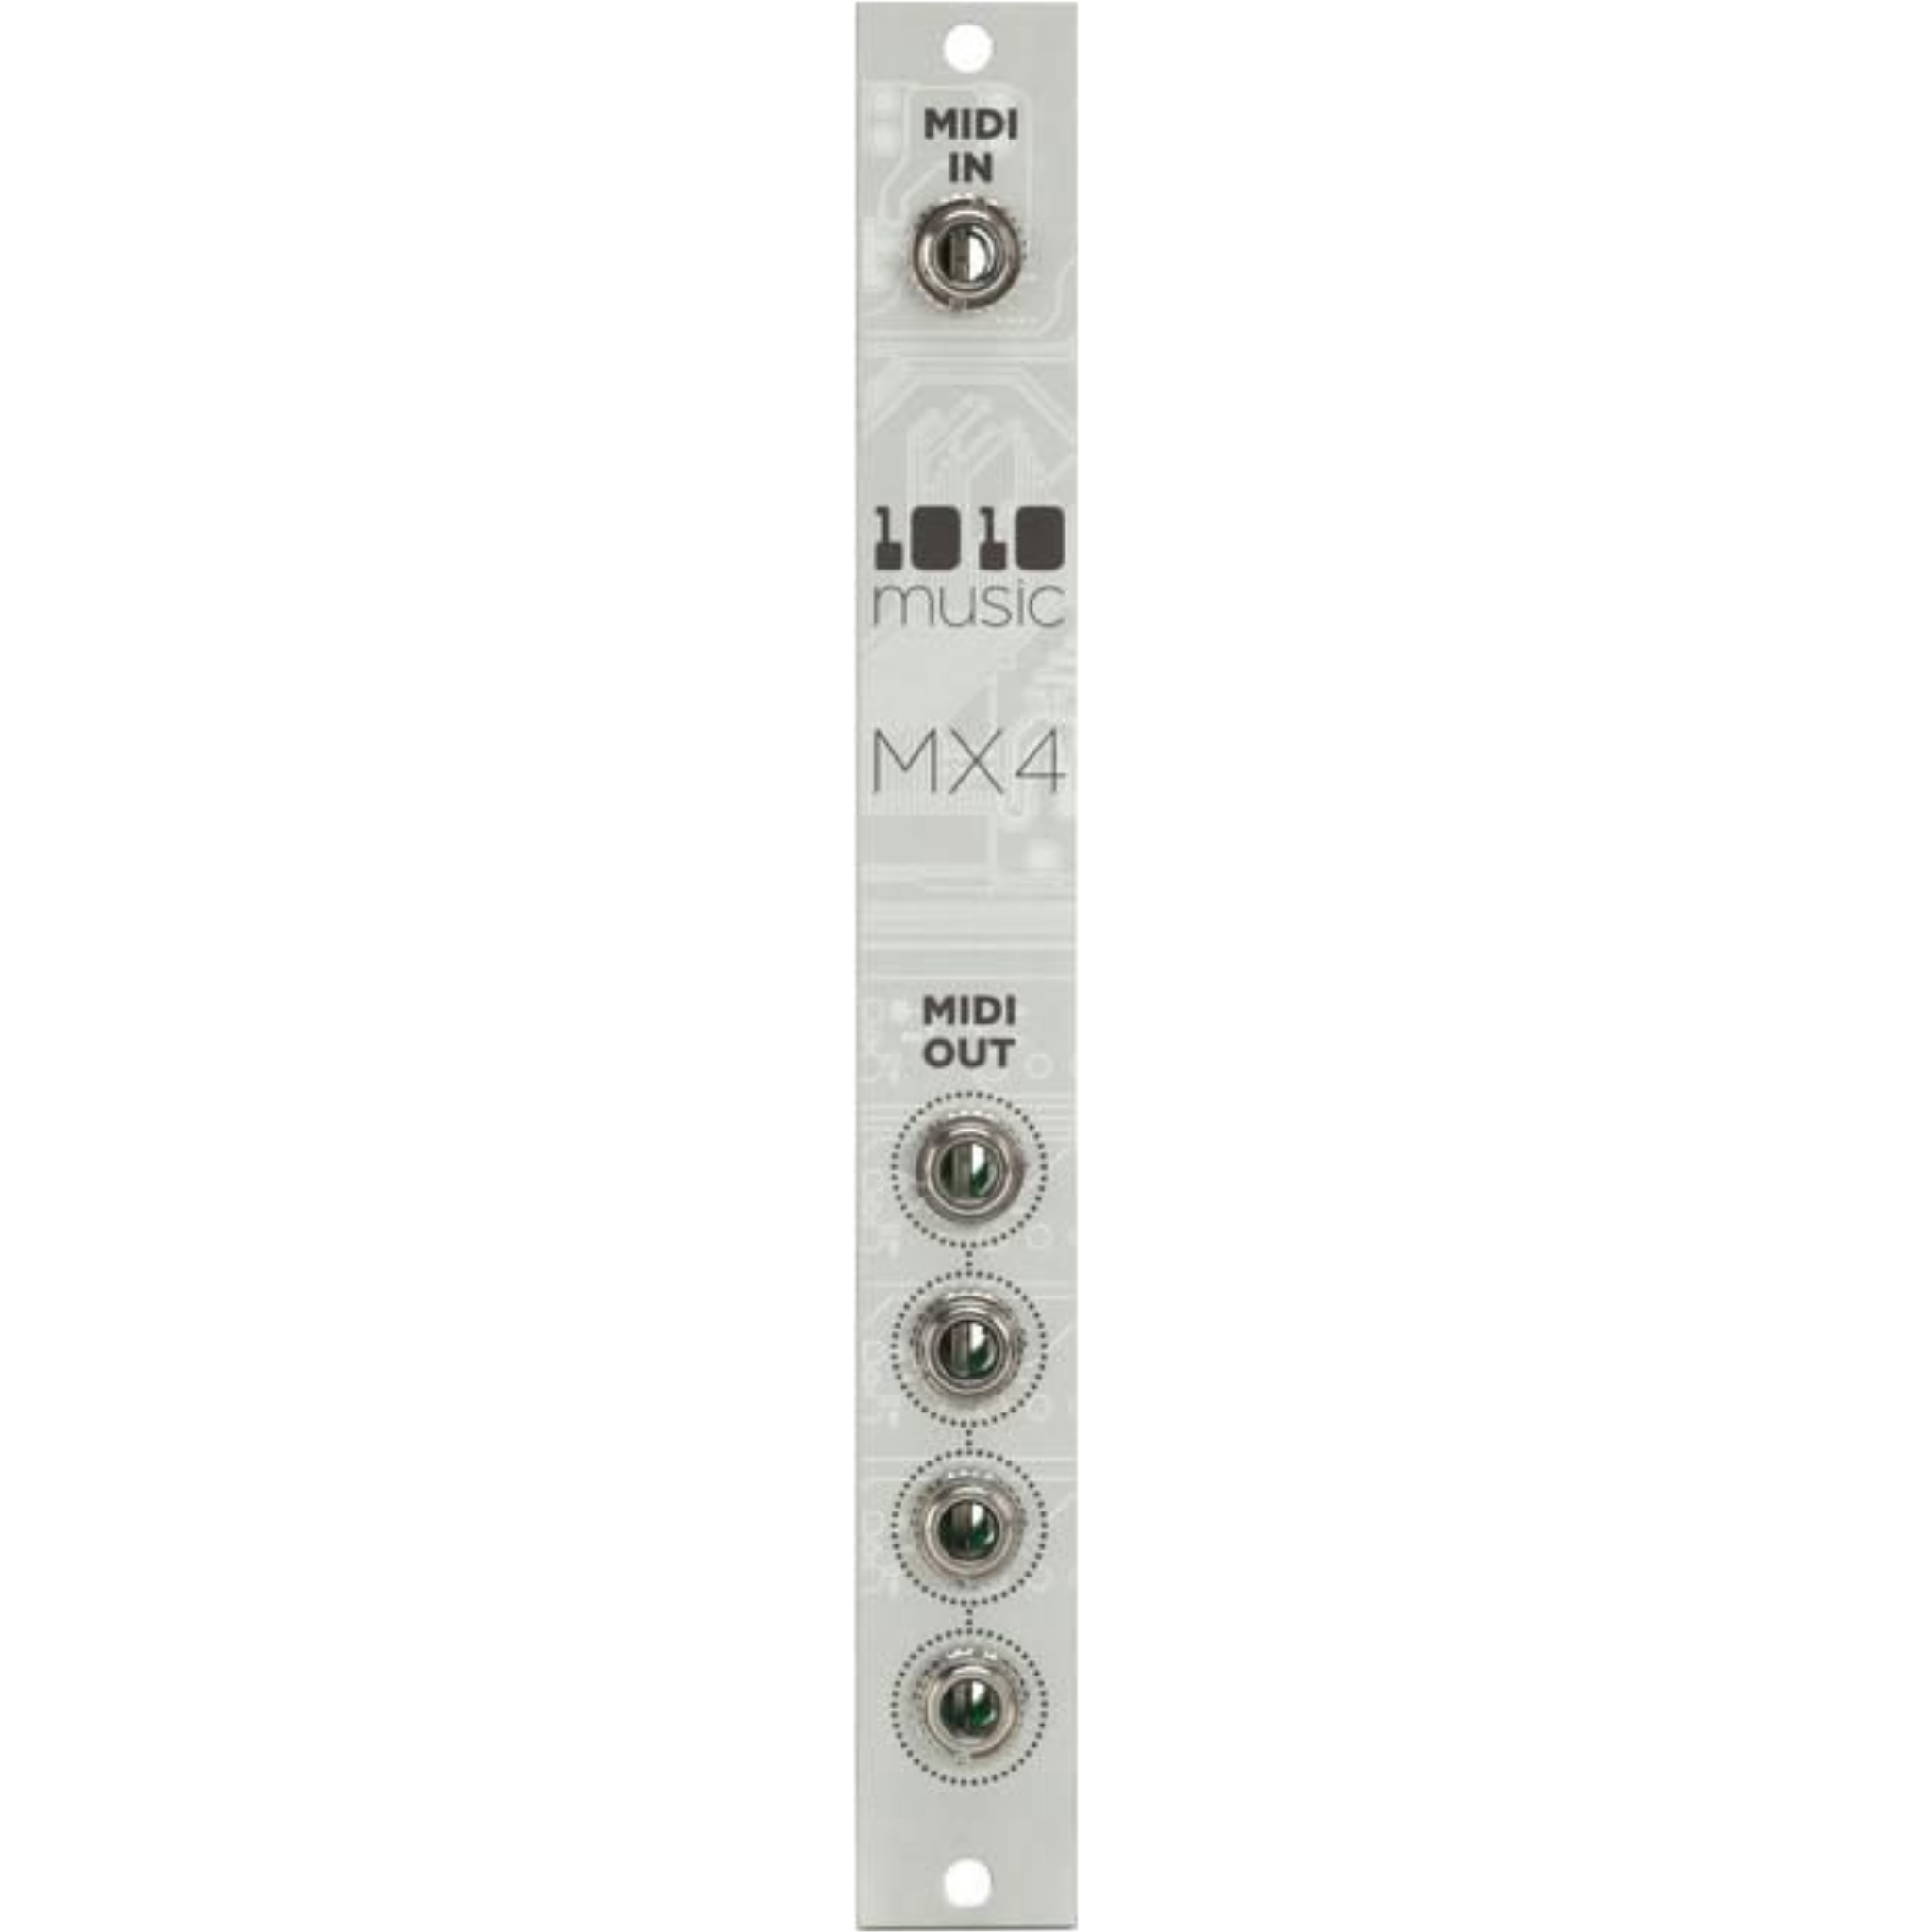 MX4 - Buffered MIDI Multiple - 1010music LLC